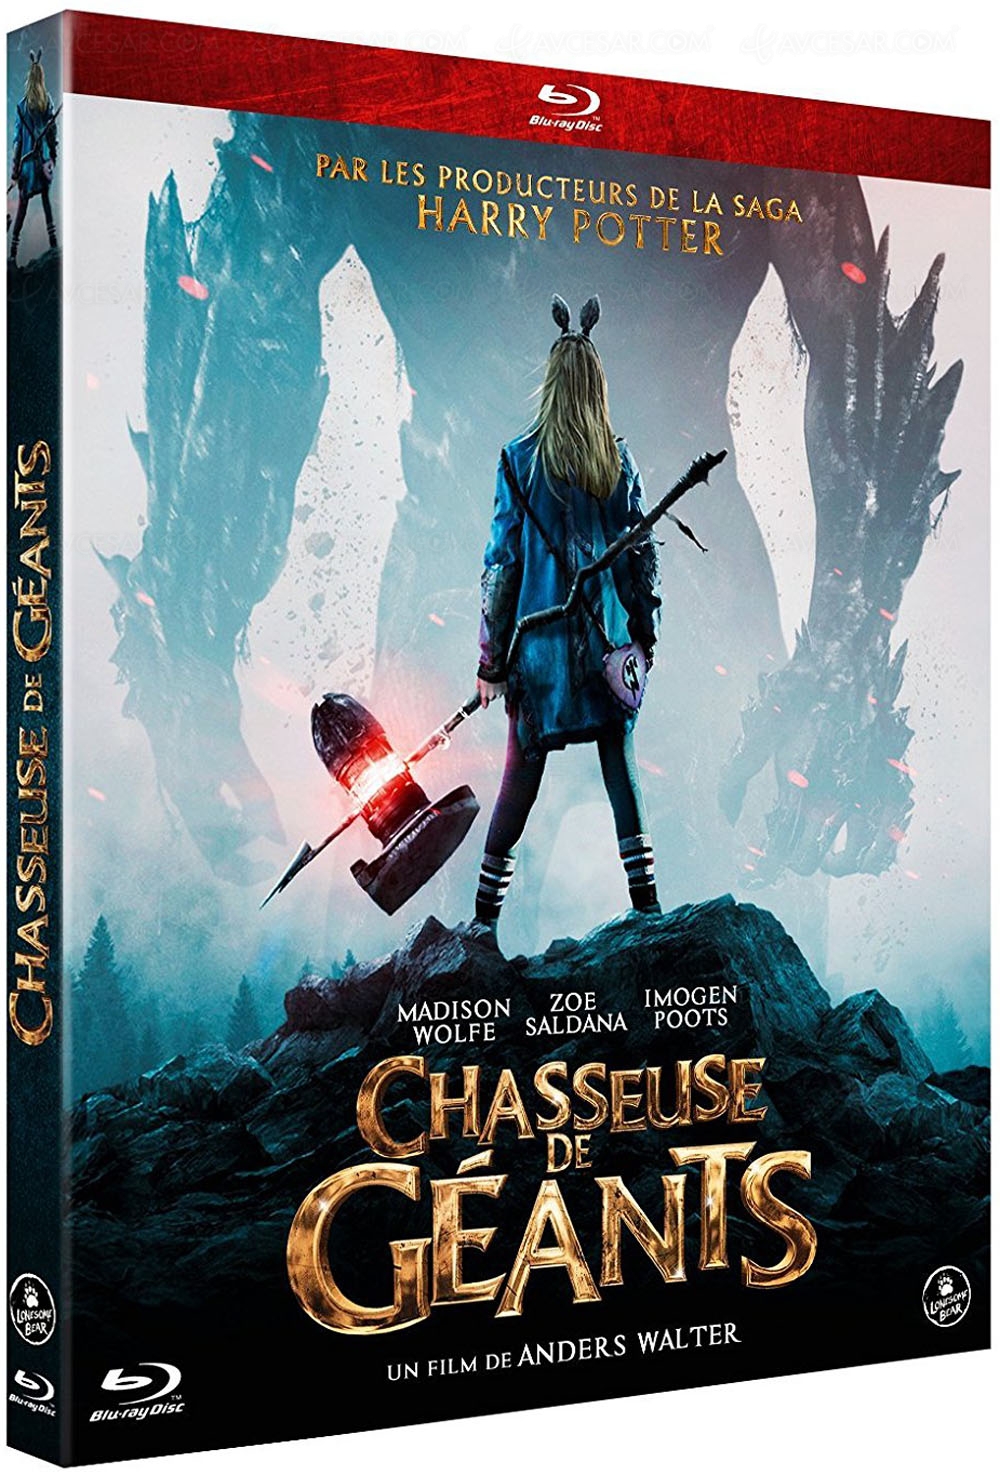 Chasseuse de Géants, disponible en Blu-ray et DVD.